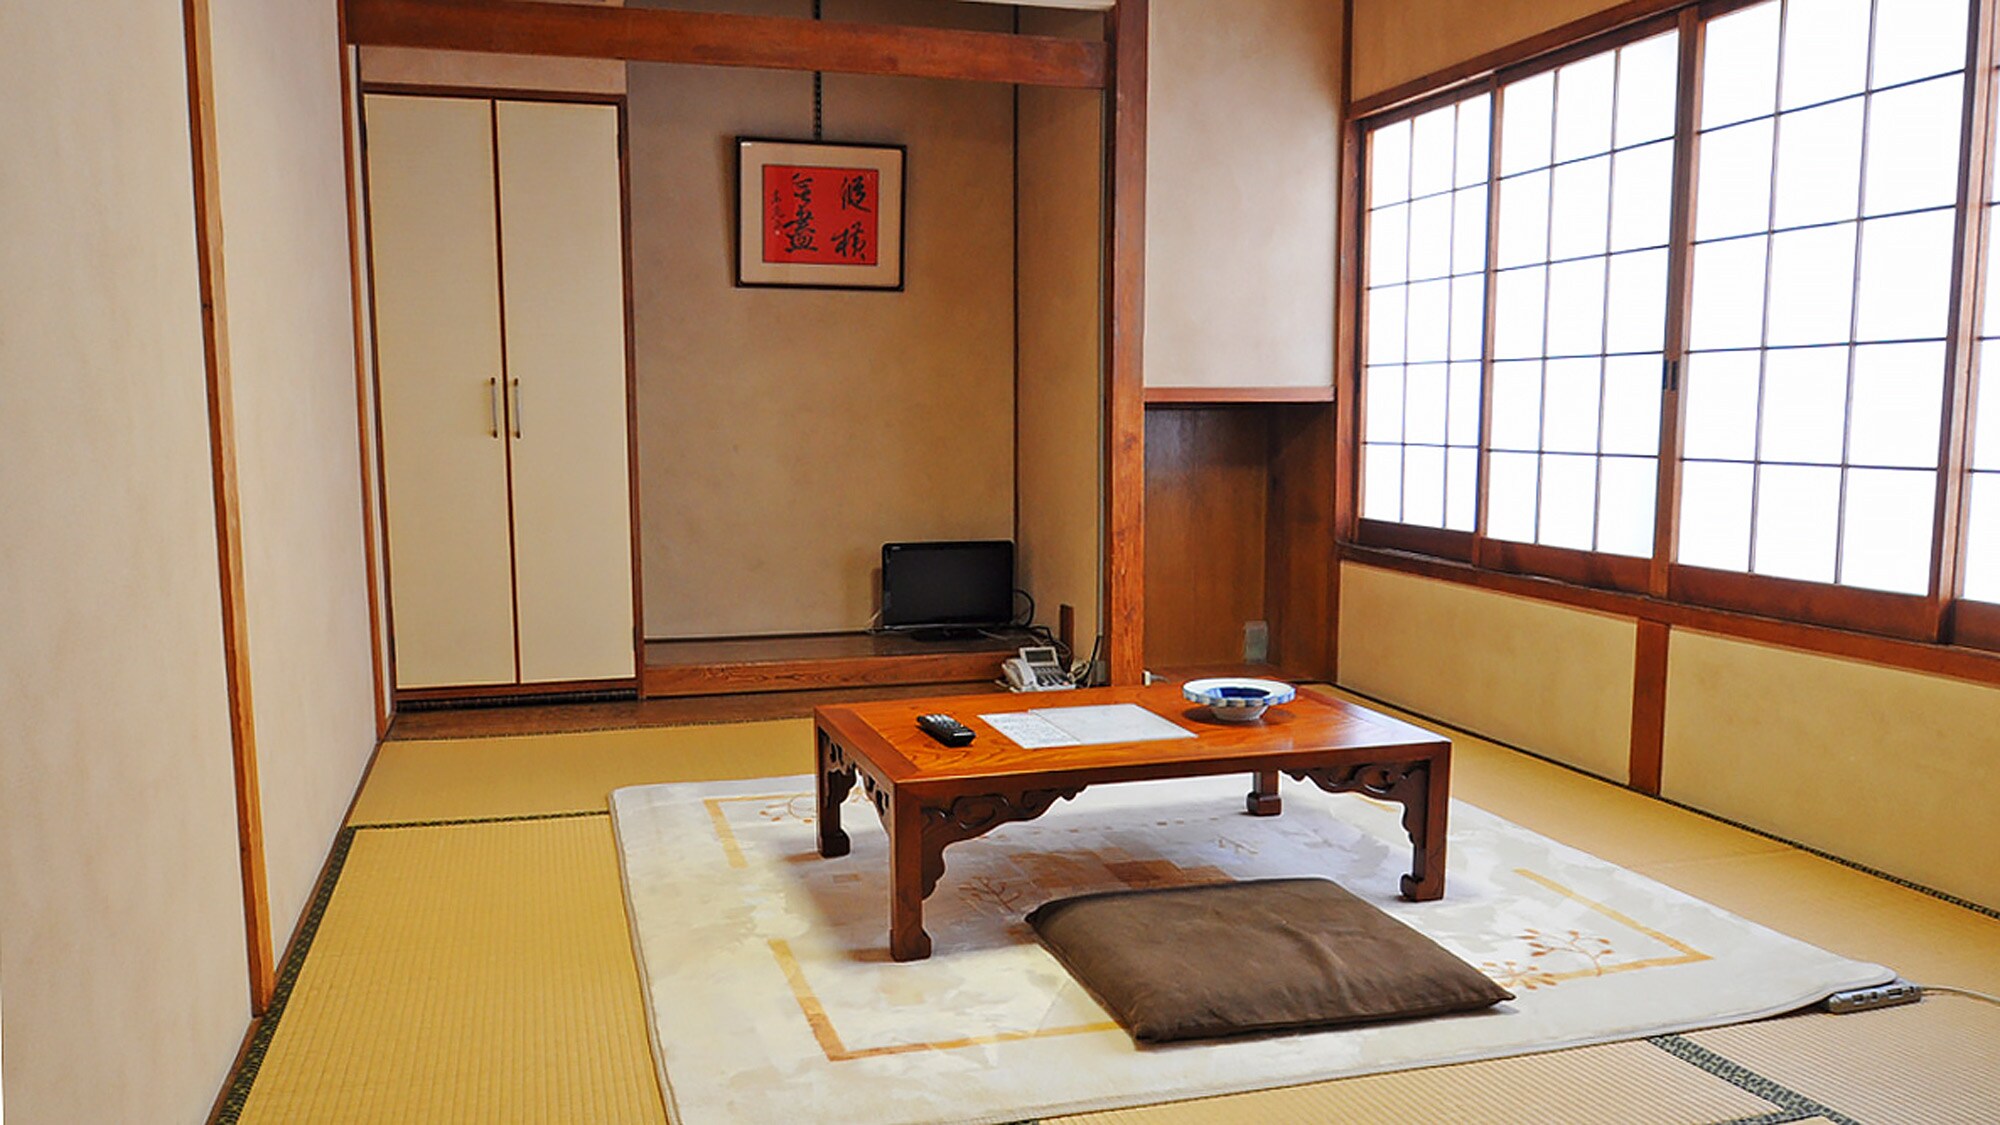 [ห้องสไตล์ญี่ปุ่น 6 เสื่อทาทามิ] ห้องที่มีกุญแจที่สามารถรองรับได้ถึง 2 ท่านที่มีรสนิยมแบบญี่ปุ่น